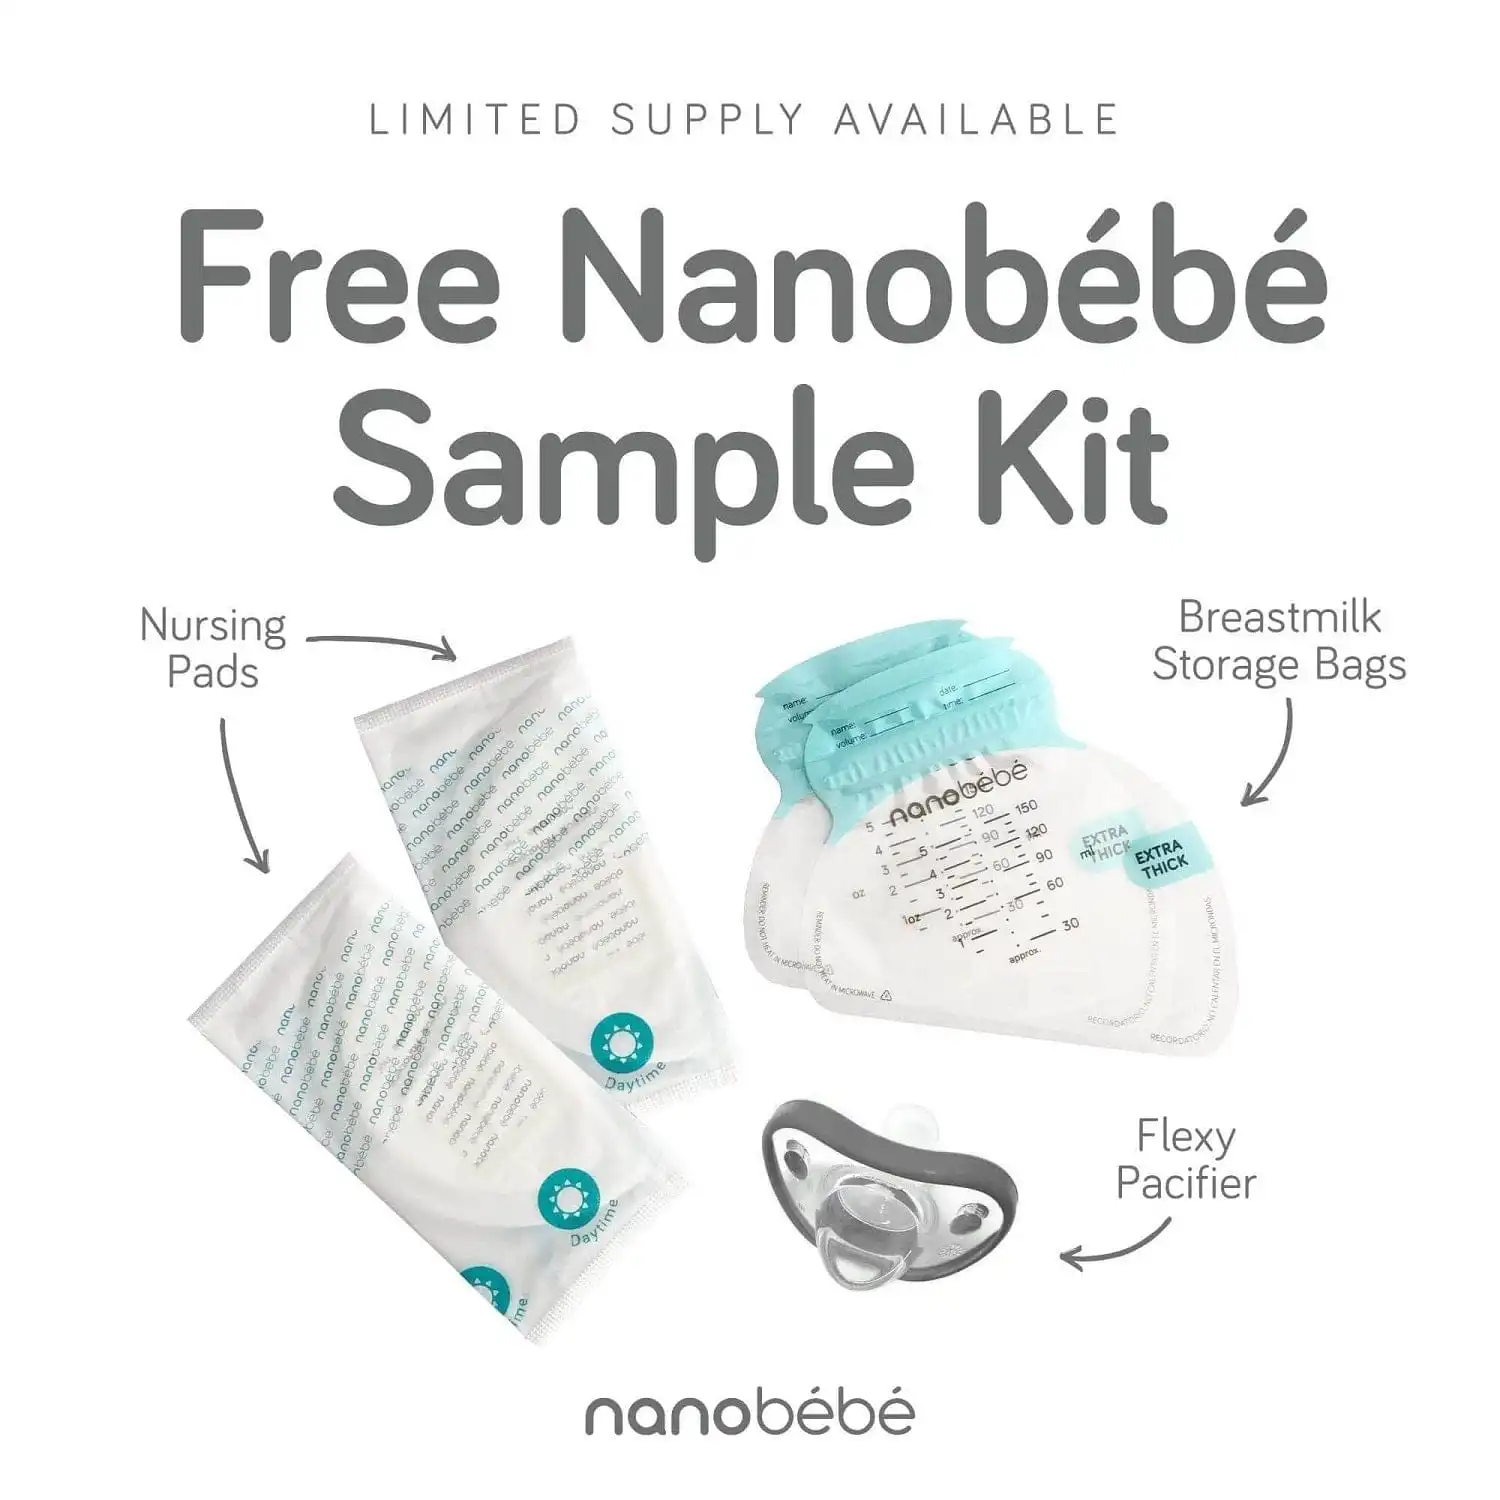 FREE Nanobebe Sample Kit